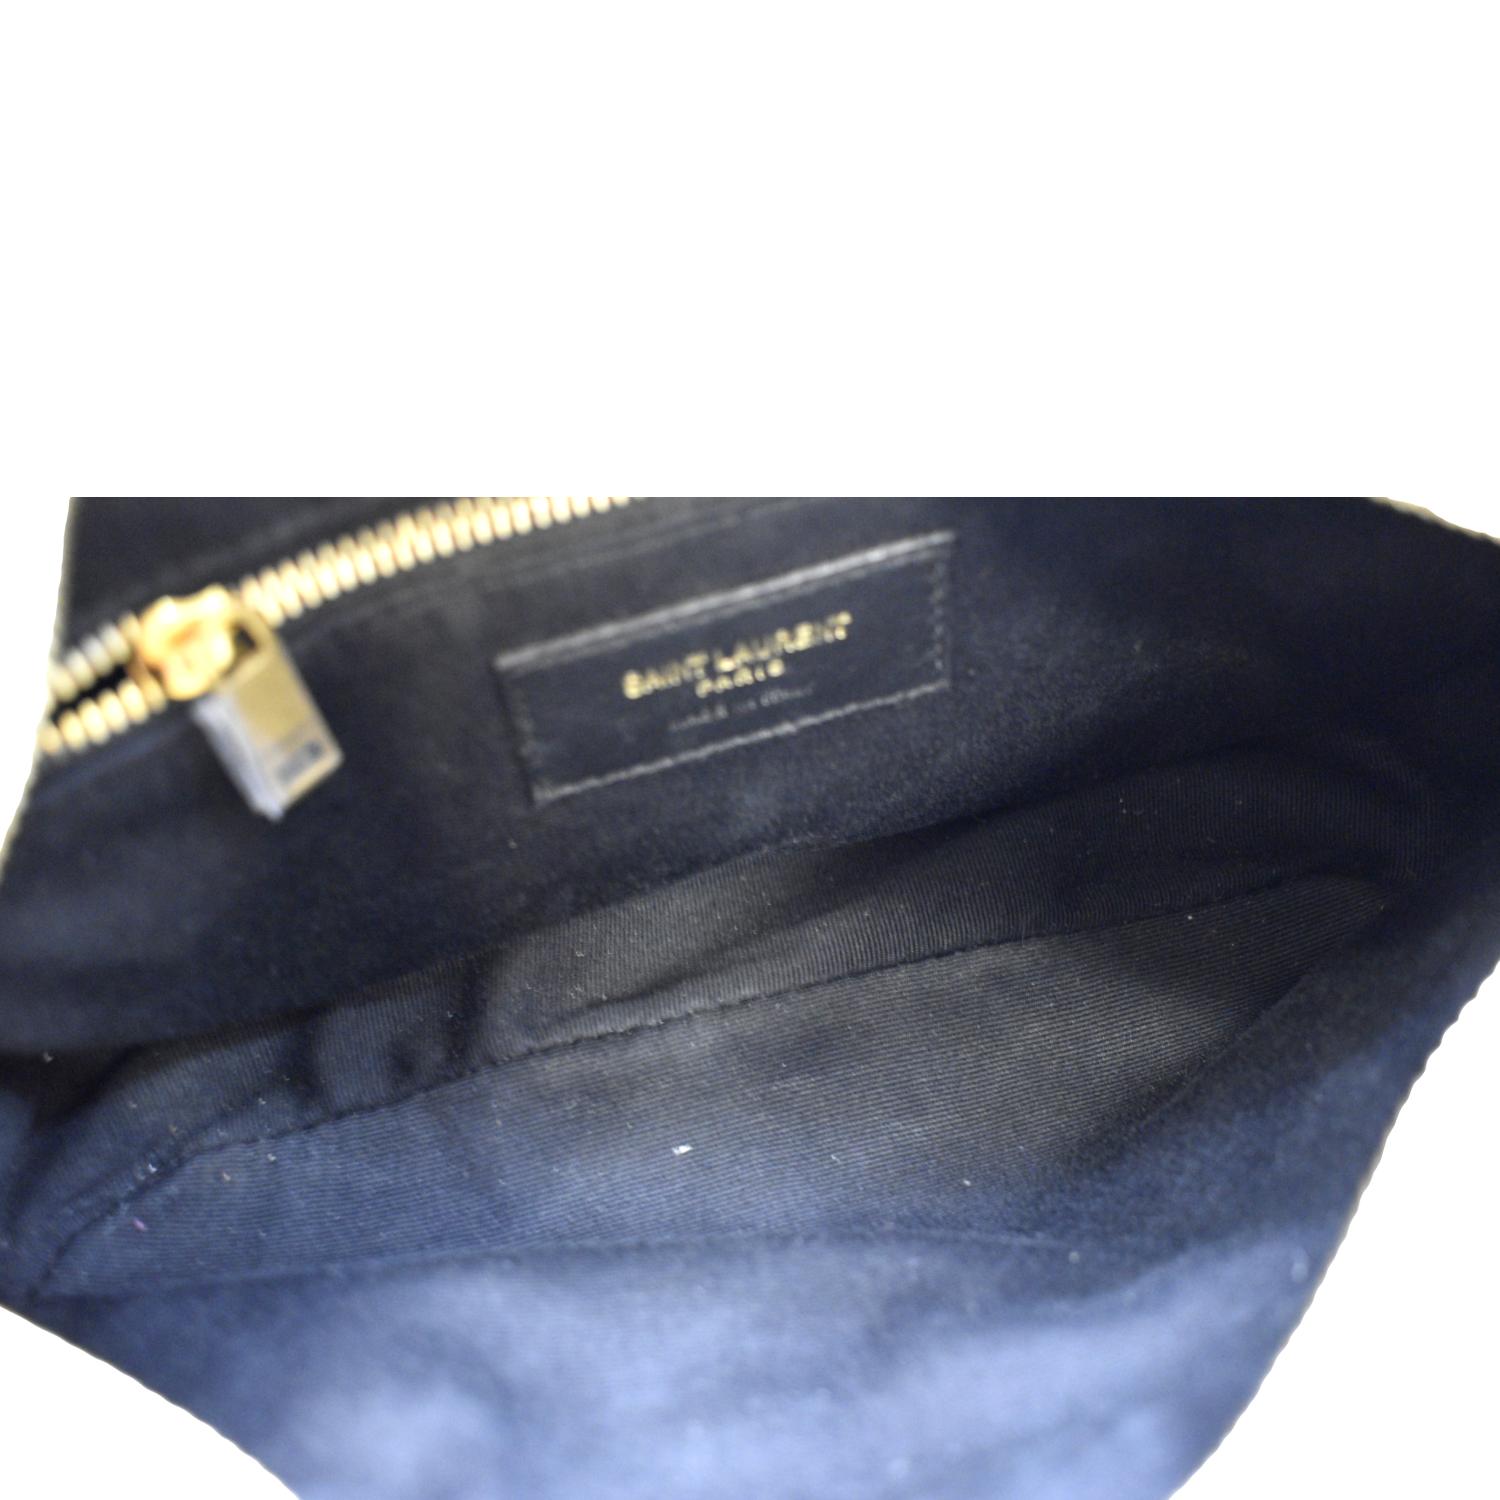 Saint Laurent Victoire Leather Shoulder Bag in Black